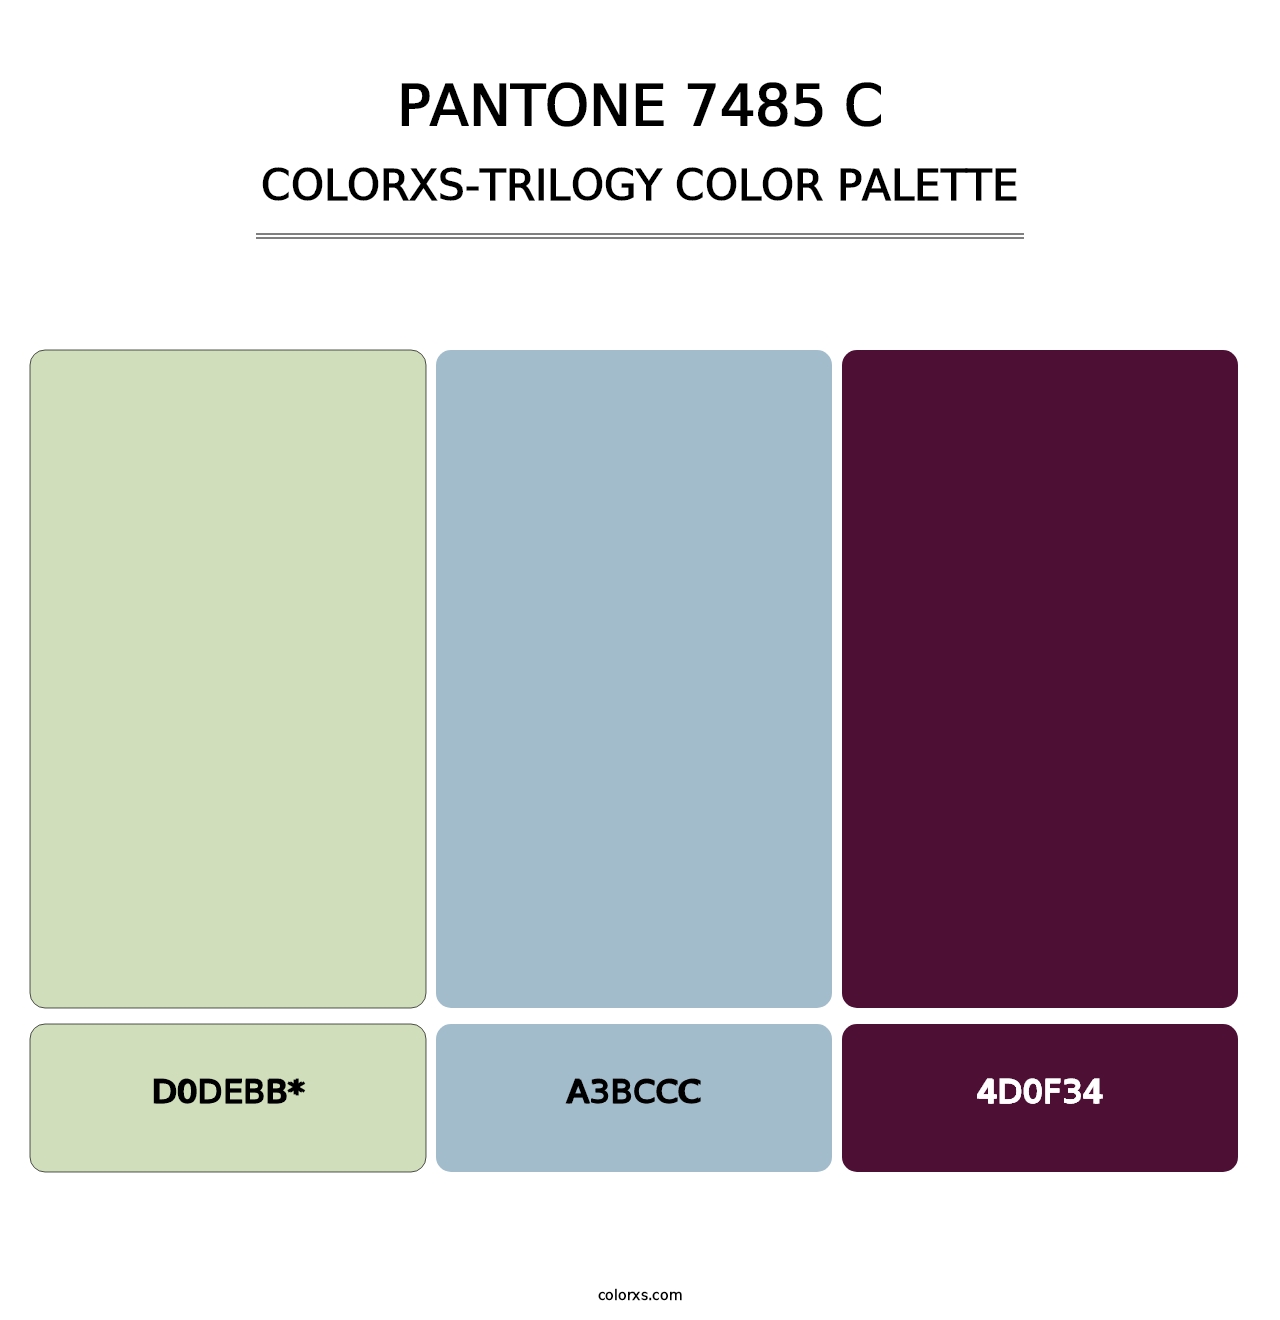 PANTONE 7485 C - Colorxs Trilogy Palette